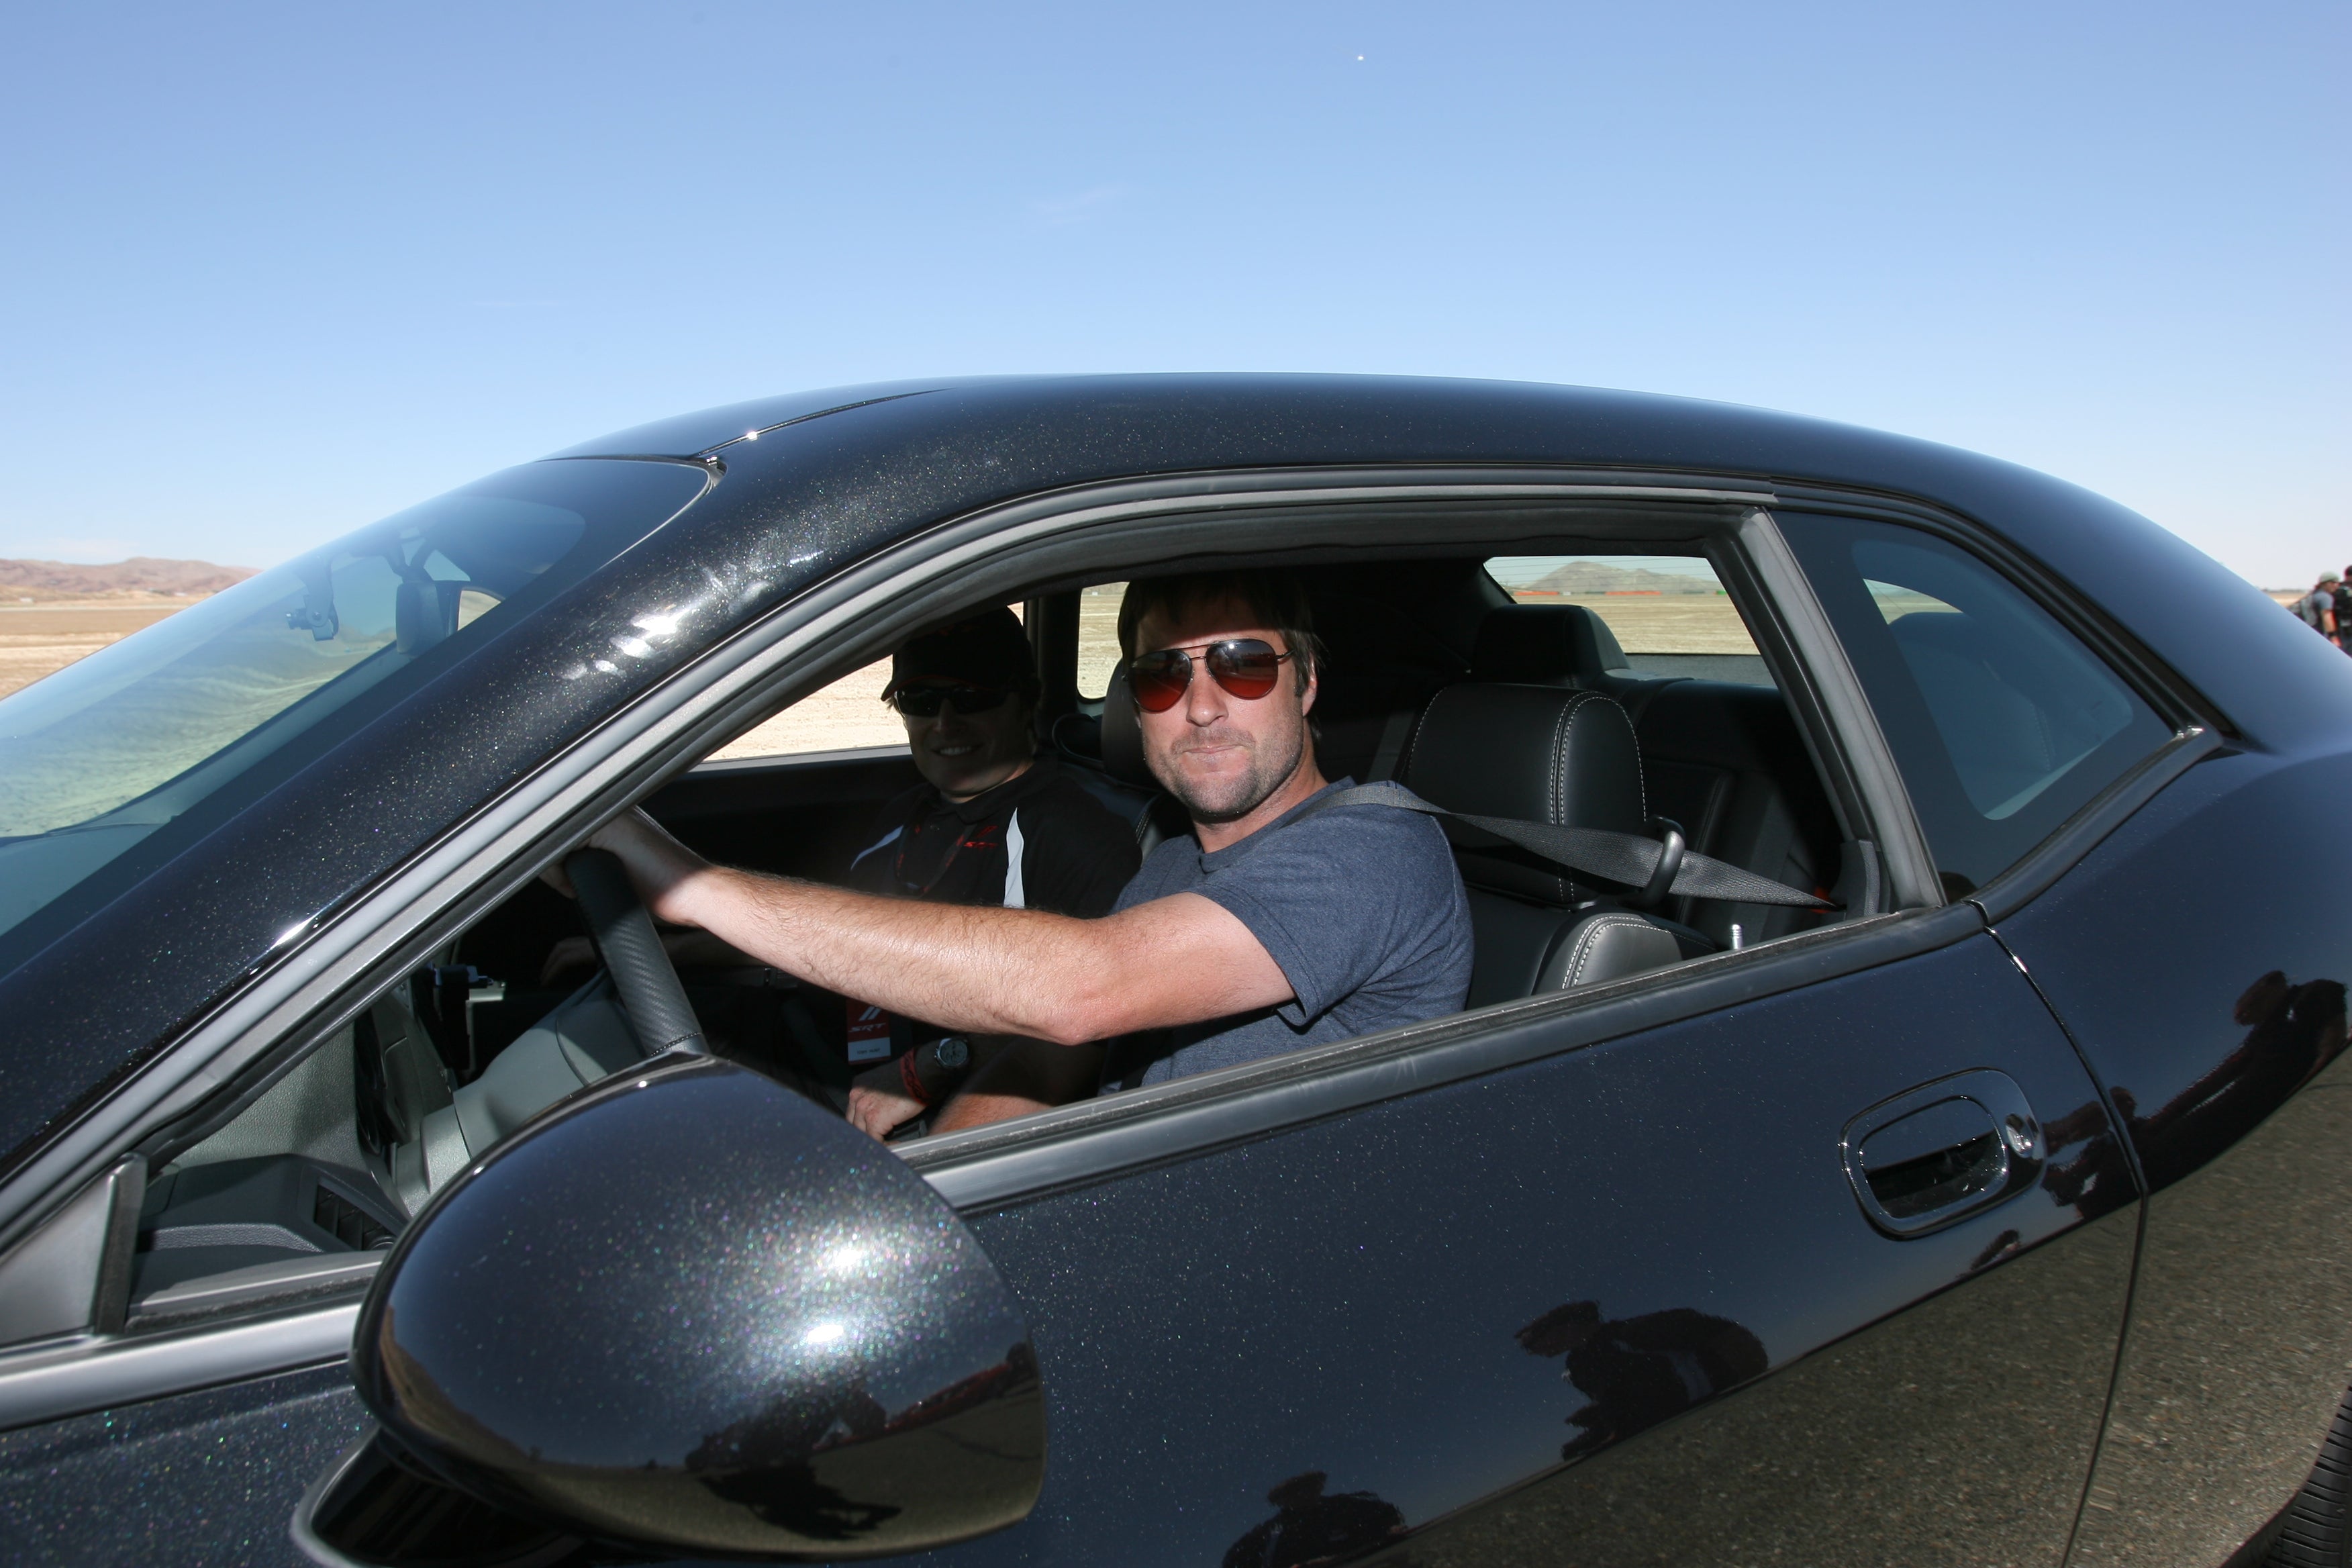 Luke Wilson driving a car outdoors.